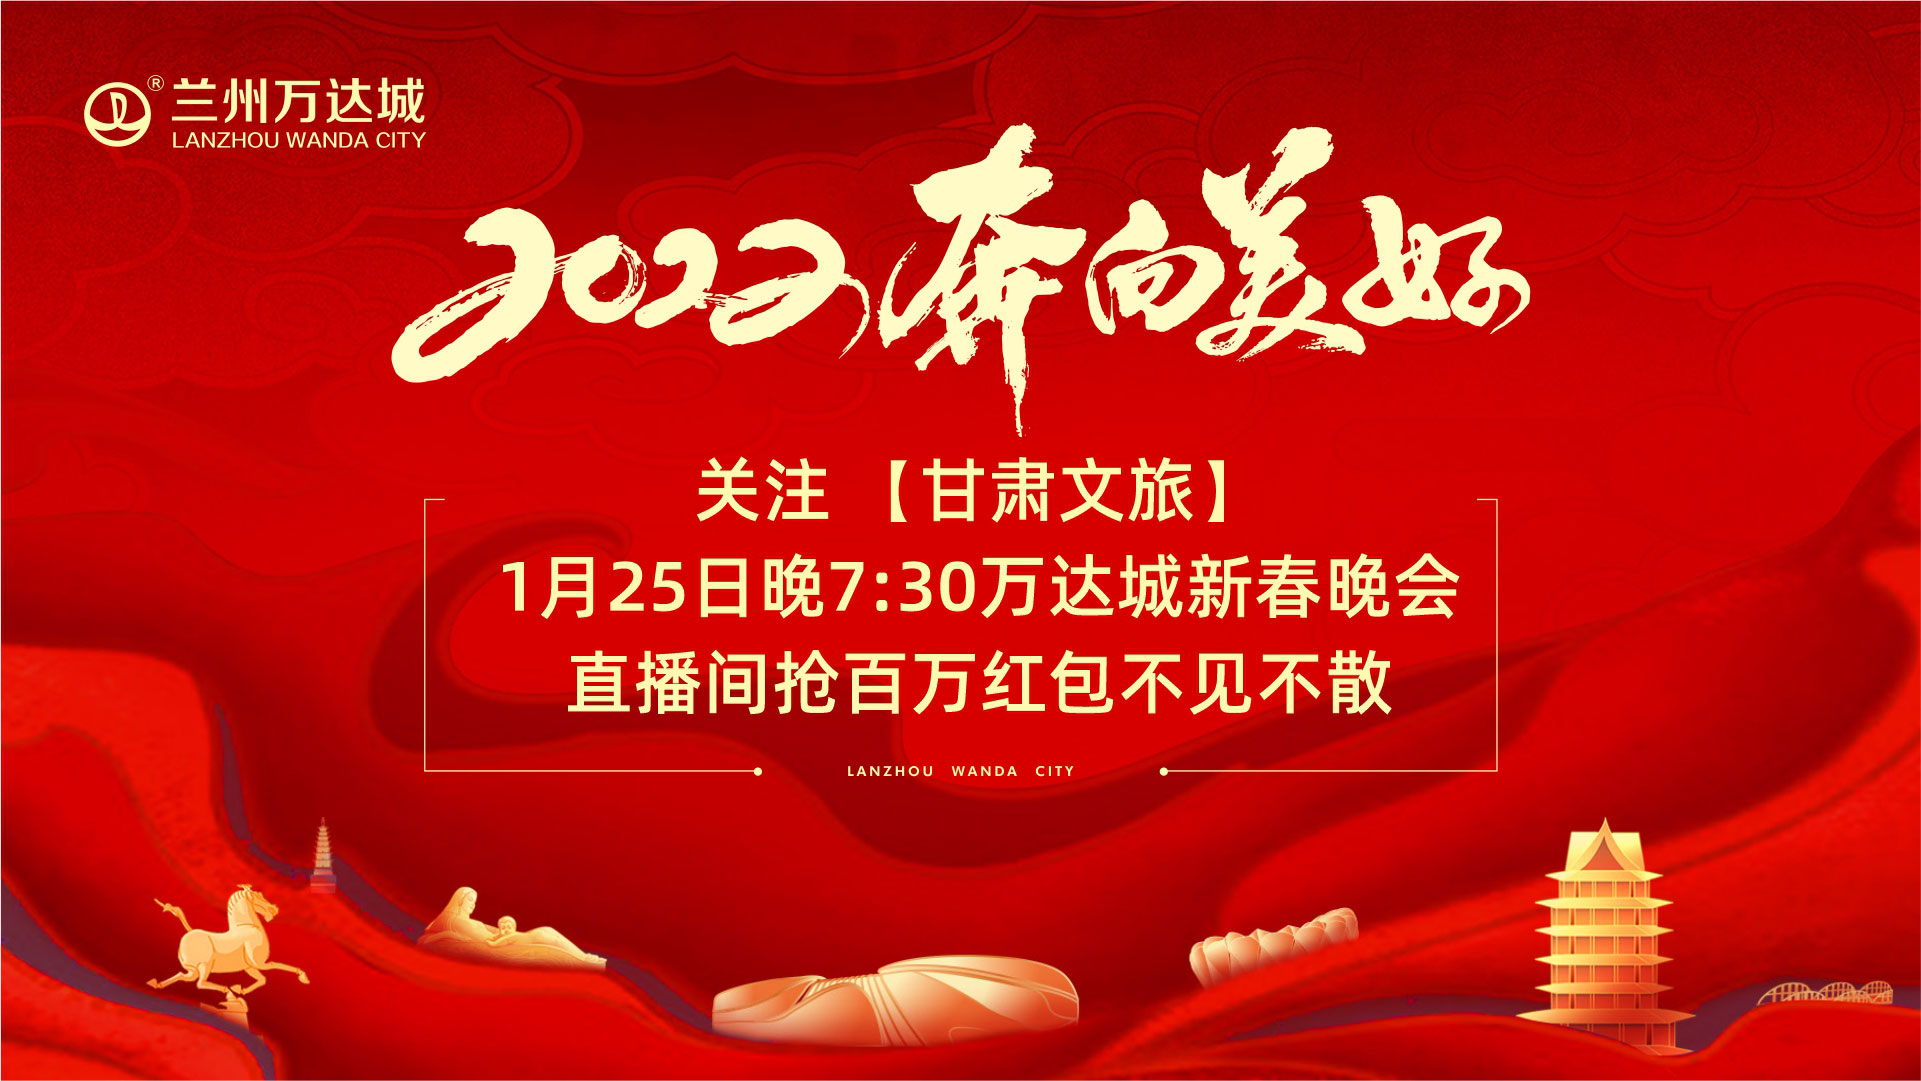 “2022奔向美好” 1月25日新春晚会